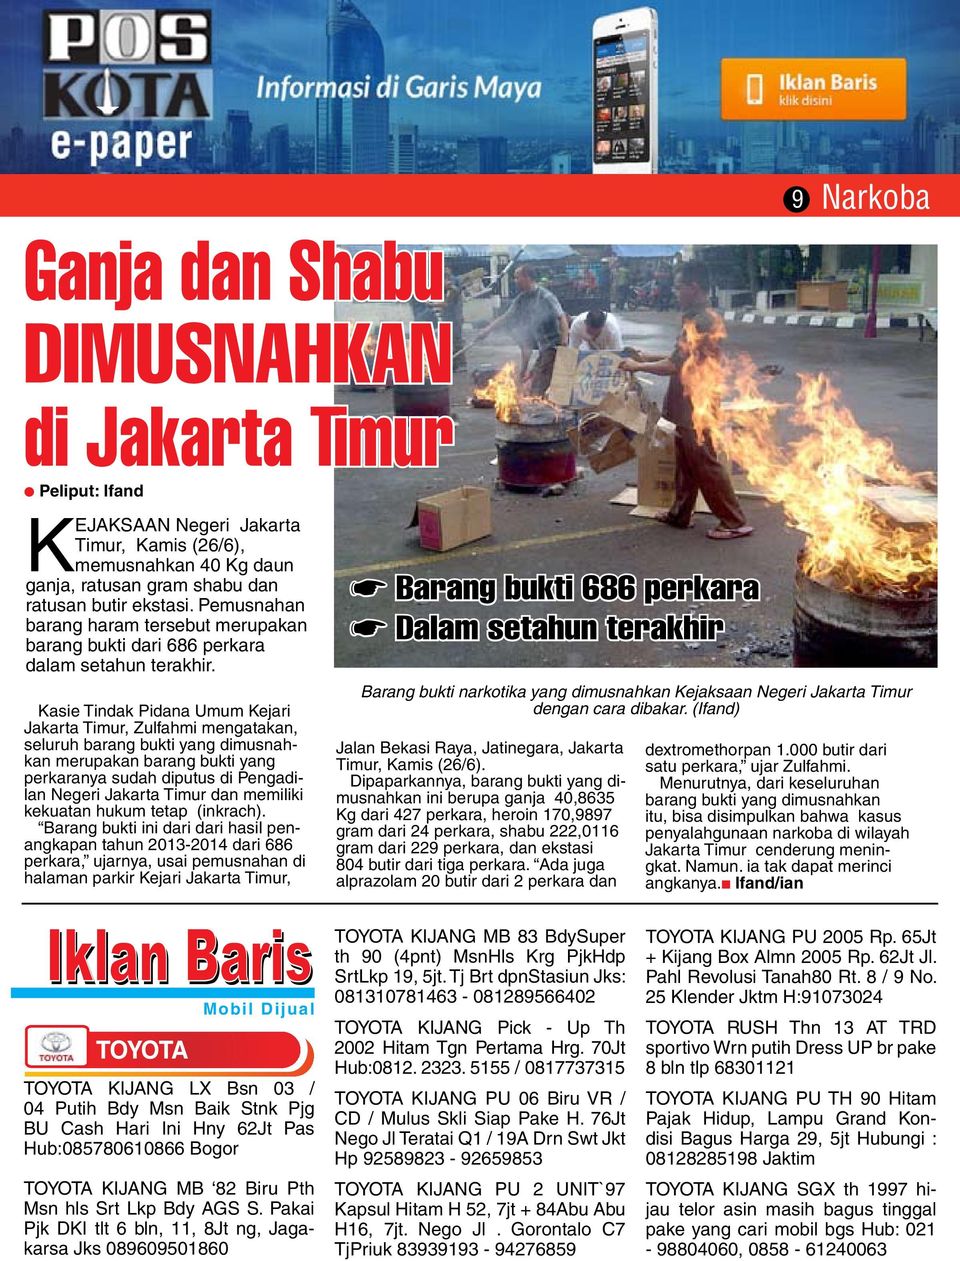 Kasie Tindak Pidana Umum Kejari Jakarta Timur, Zulfahmi mengatakan, seluruh barang bukti yang dimusnahkan merupakan barang bukti yang perkaranya sudah diputus di Pengadilan Negeri Jakarta Timur dan